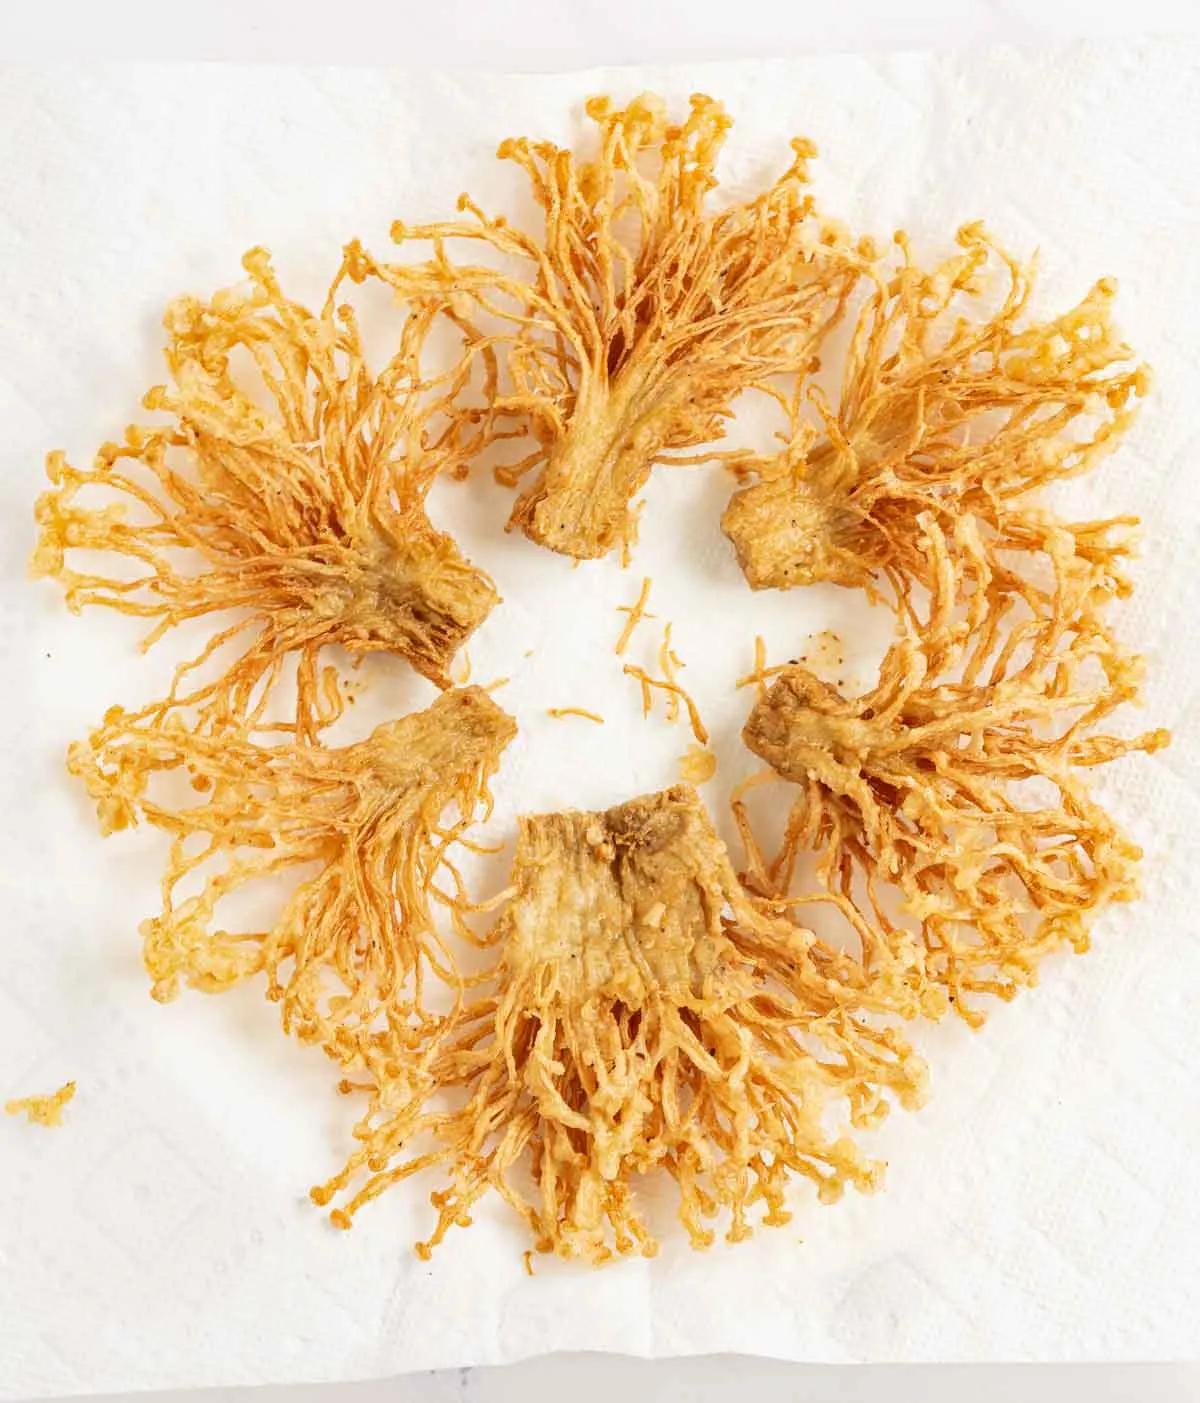 Fried enoki mushrooms draining on paper towel